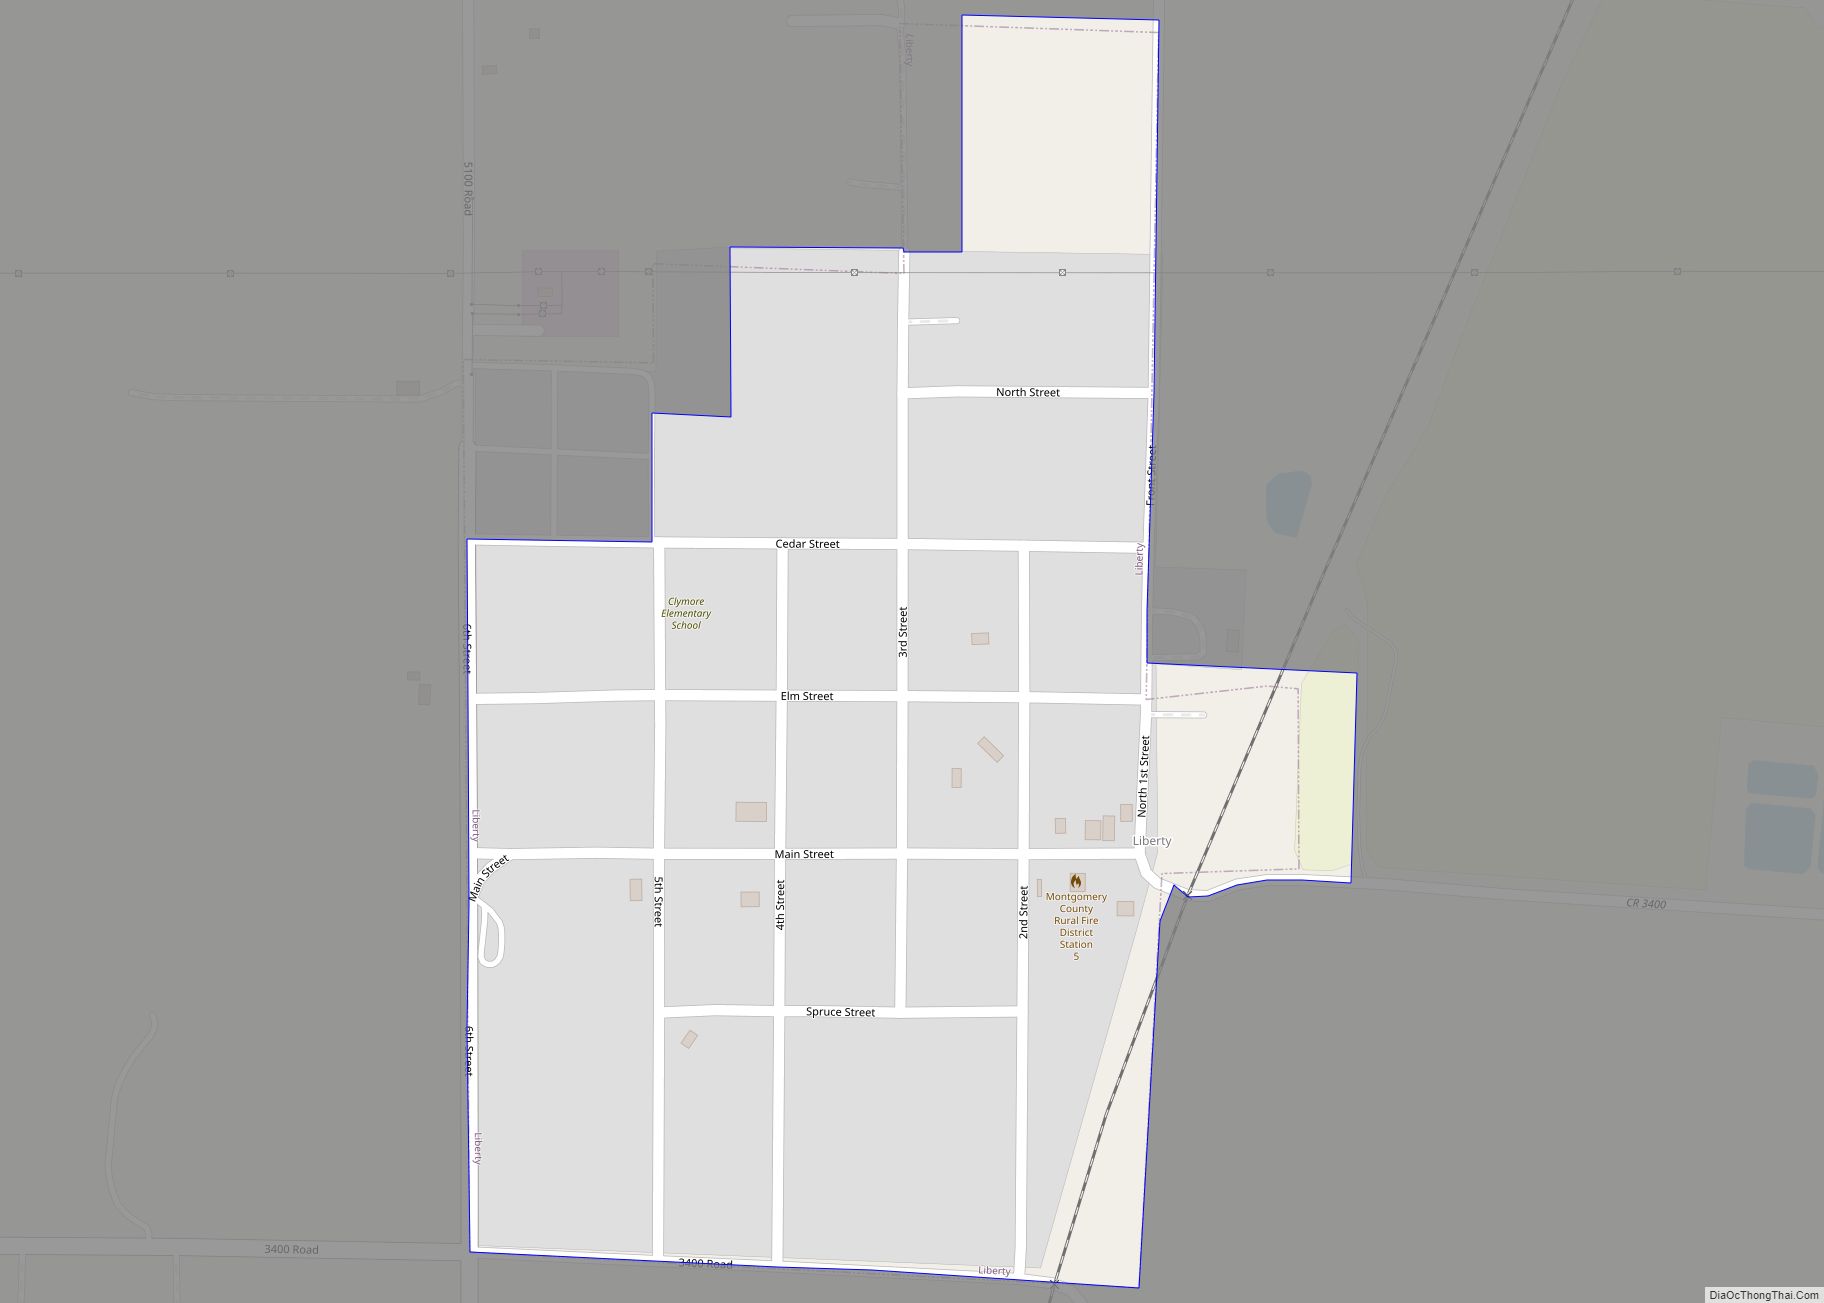 Map of Liberty city, Kansas